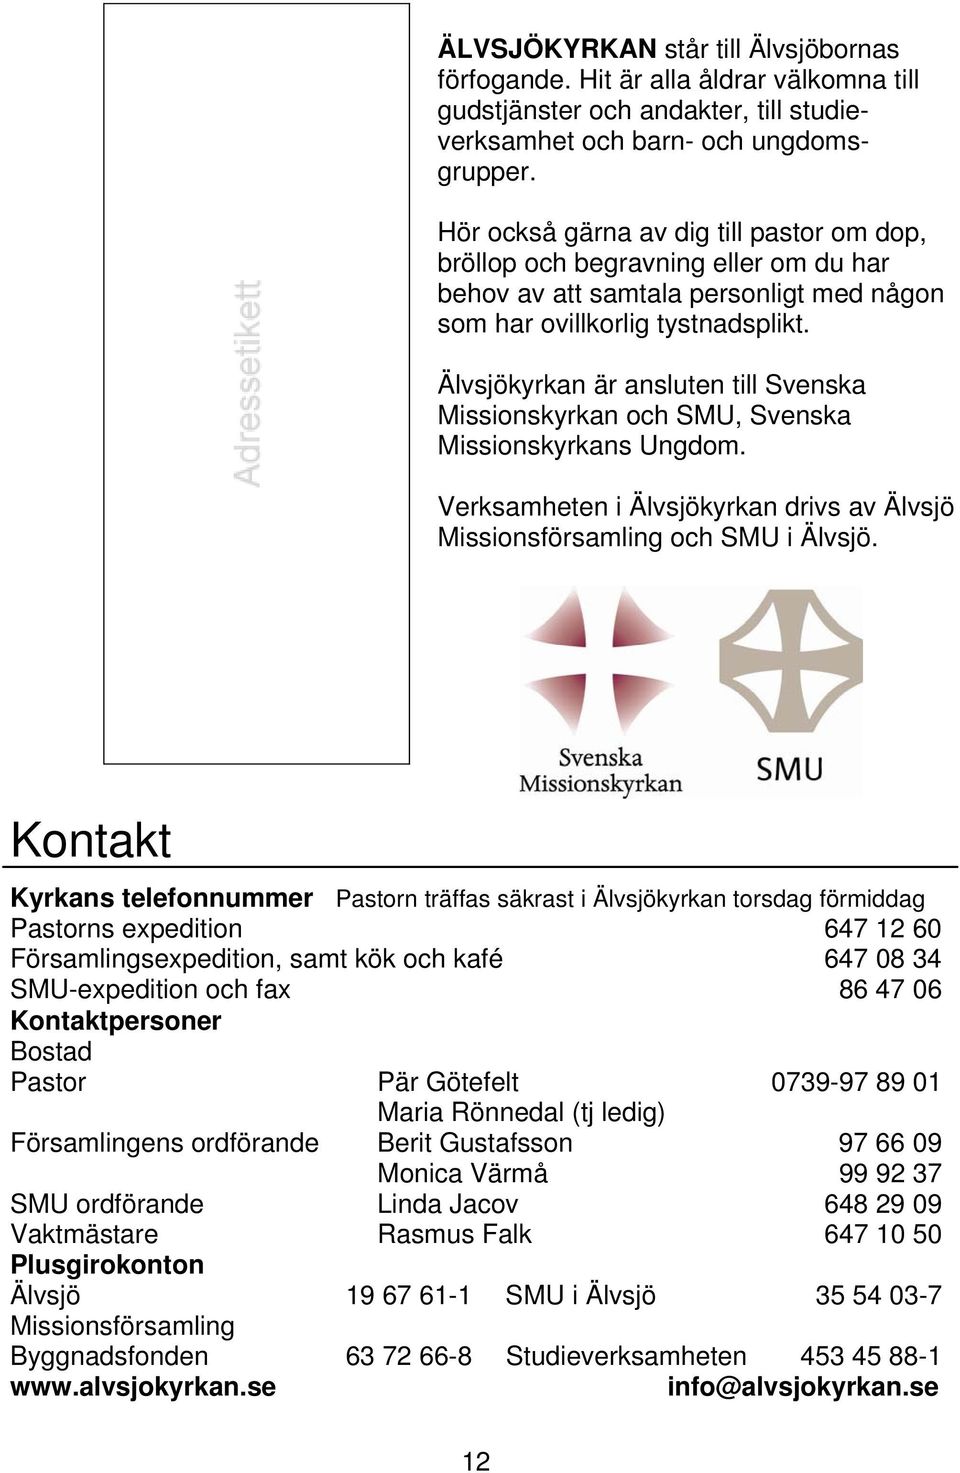 Älvsjökyrkan är ansluten till Svenska Missionskyrkan och SMU, Svenska Missionskyrkans Ungdom. Verksamheten i Älvsjökyrkan drivs av Älvsjö Missionsförsamling och SMU i Älvsjö.